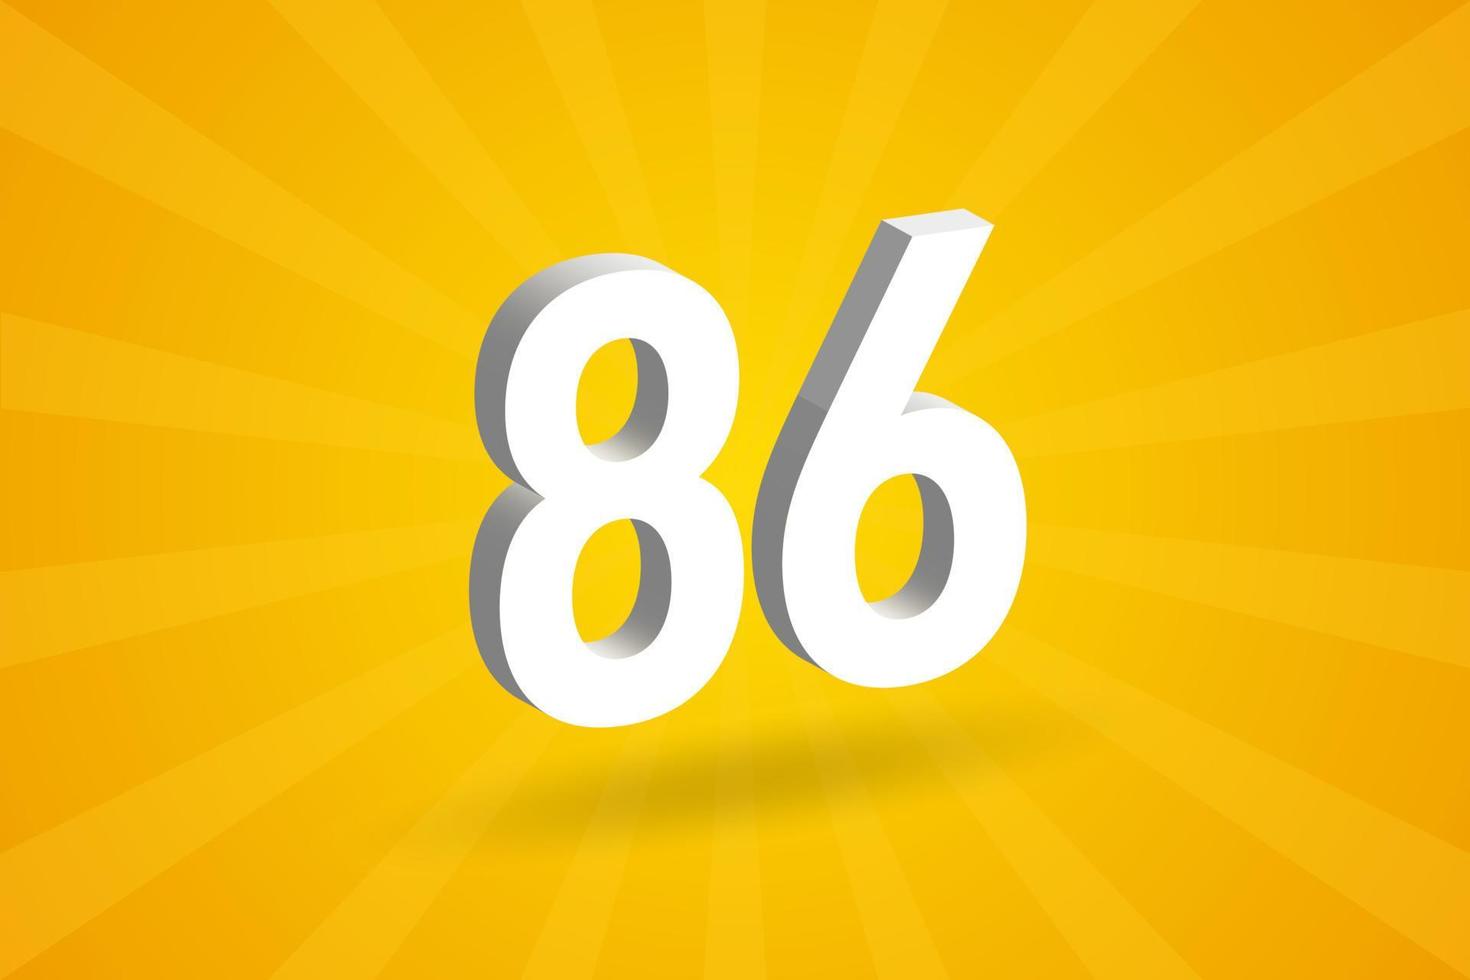 alfabeto de fonte de 86 números 3D. branco 3d número 86 com fundo amarelo vetor